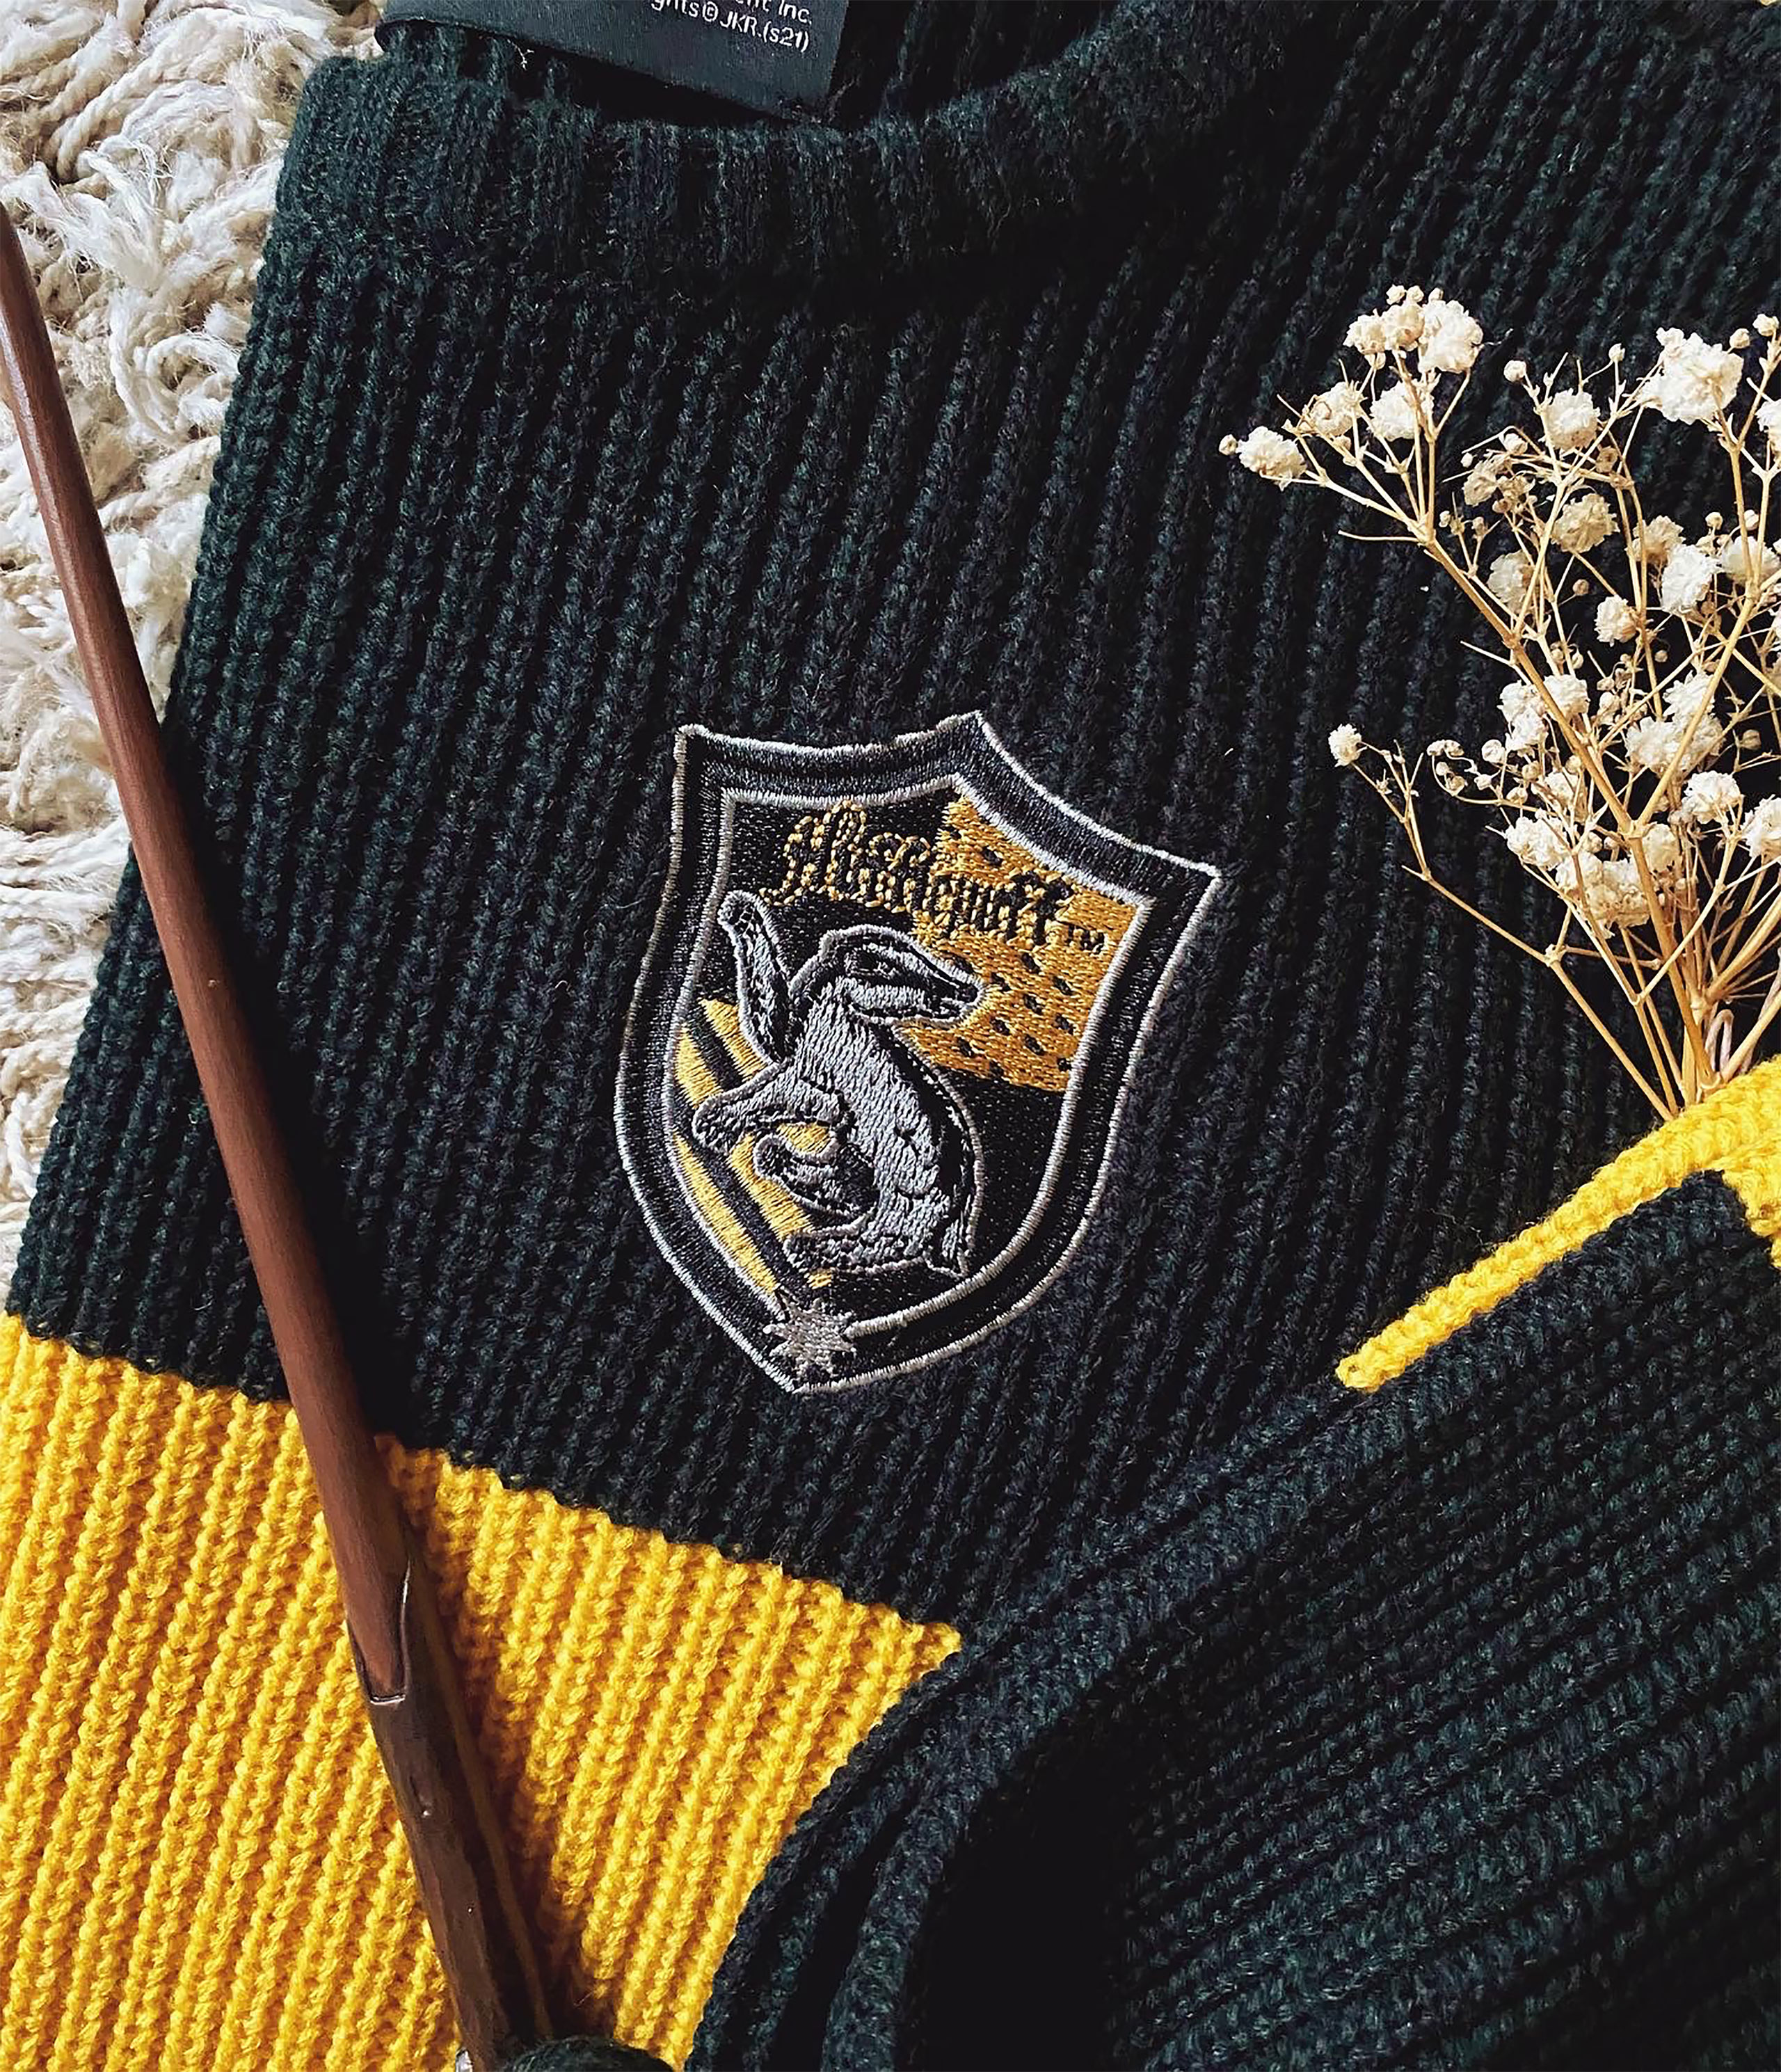 Harry Potter - Hufflepuff Crop Sweater Damen